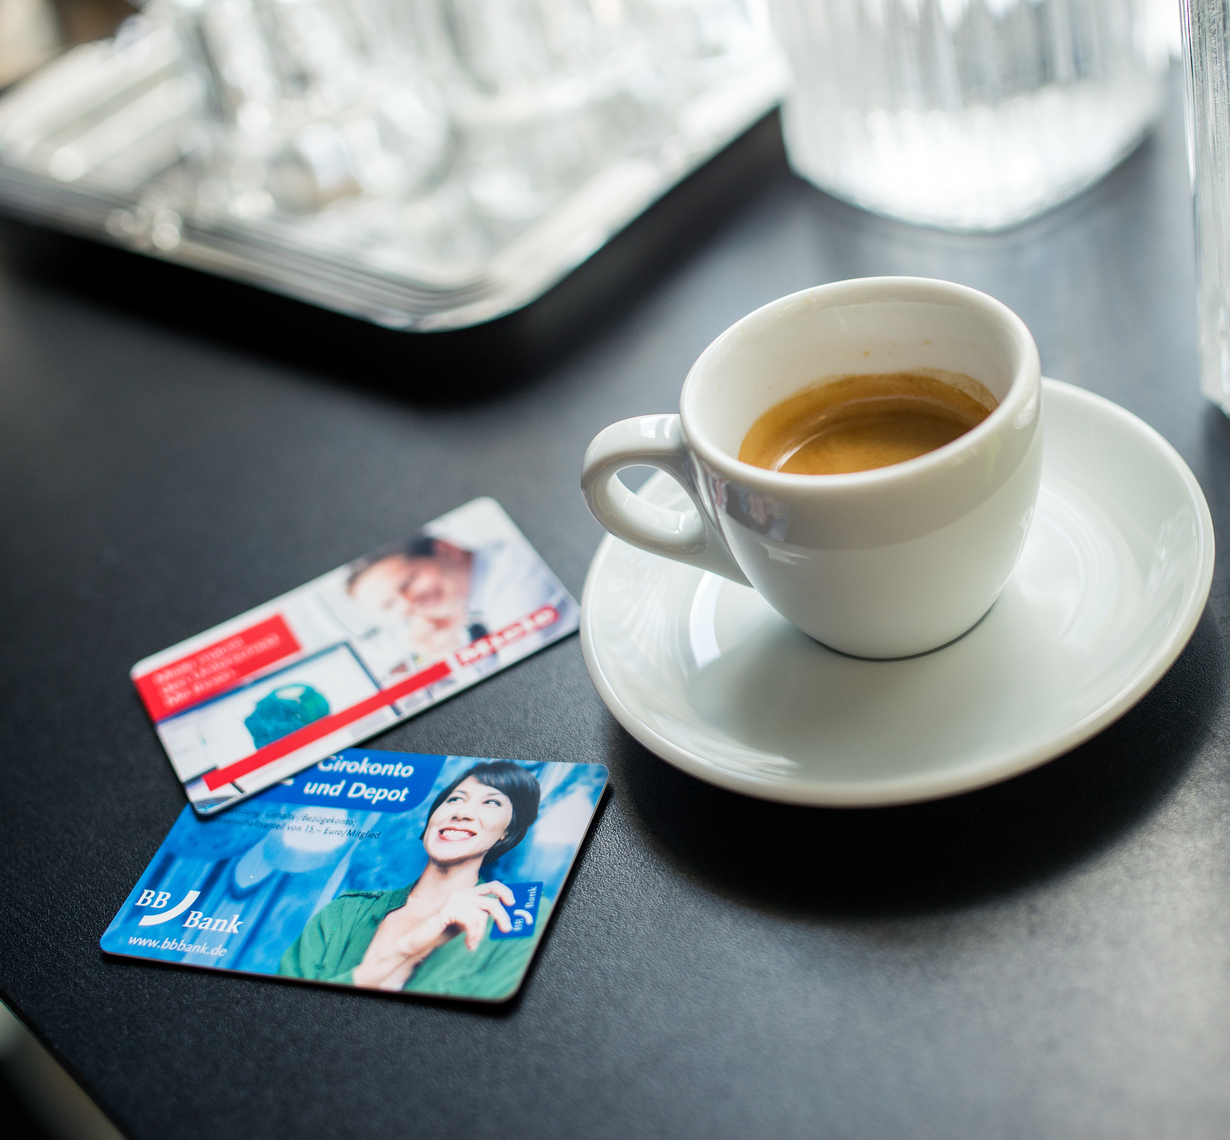 KIT-Cards neben Kaffeetasse